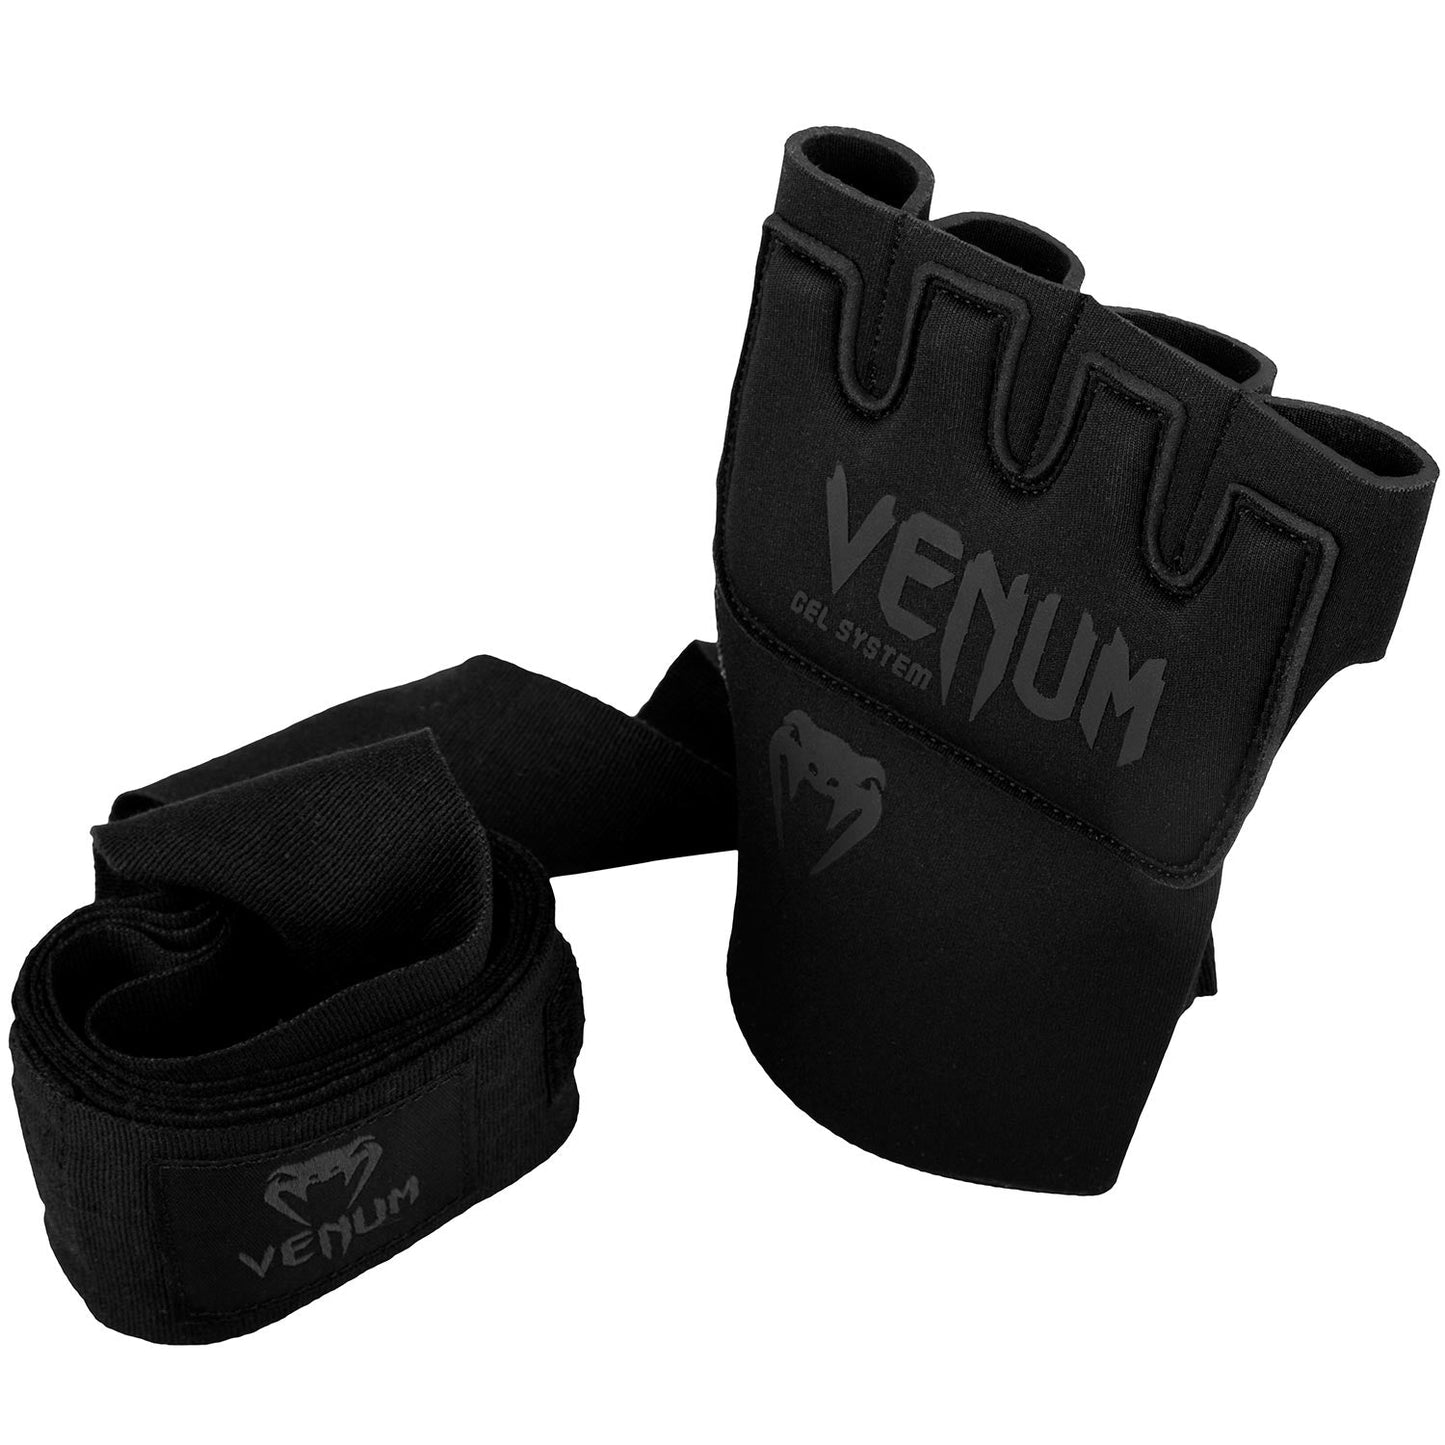 Venum Gel Kontact Handschuh Wraps - Schwarz/Schwarz